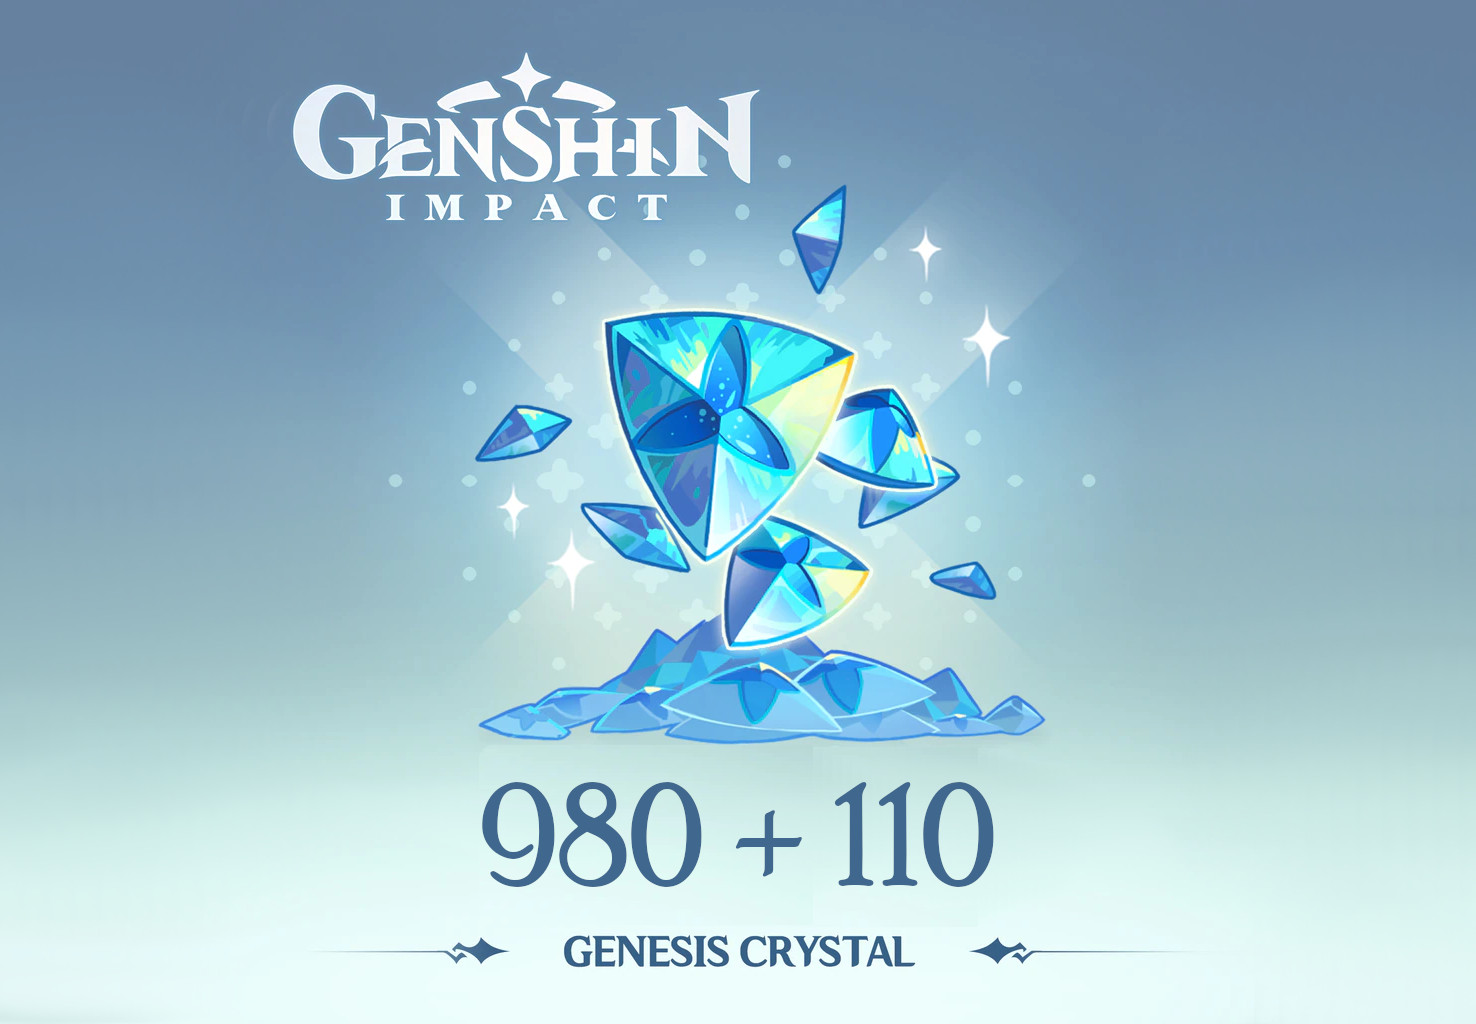 Genshin Impact - 980 + 110 Genesis Crystals Reidos Voucher, 17.23$